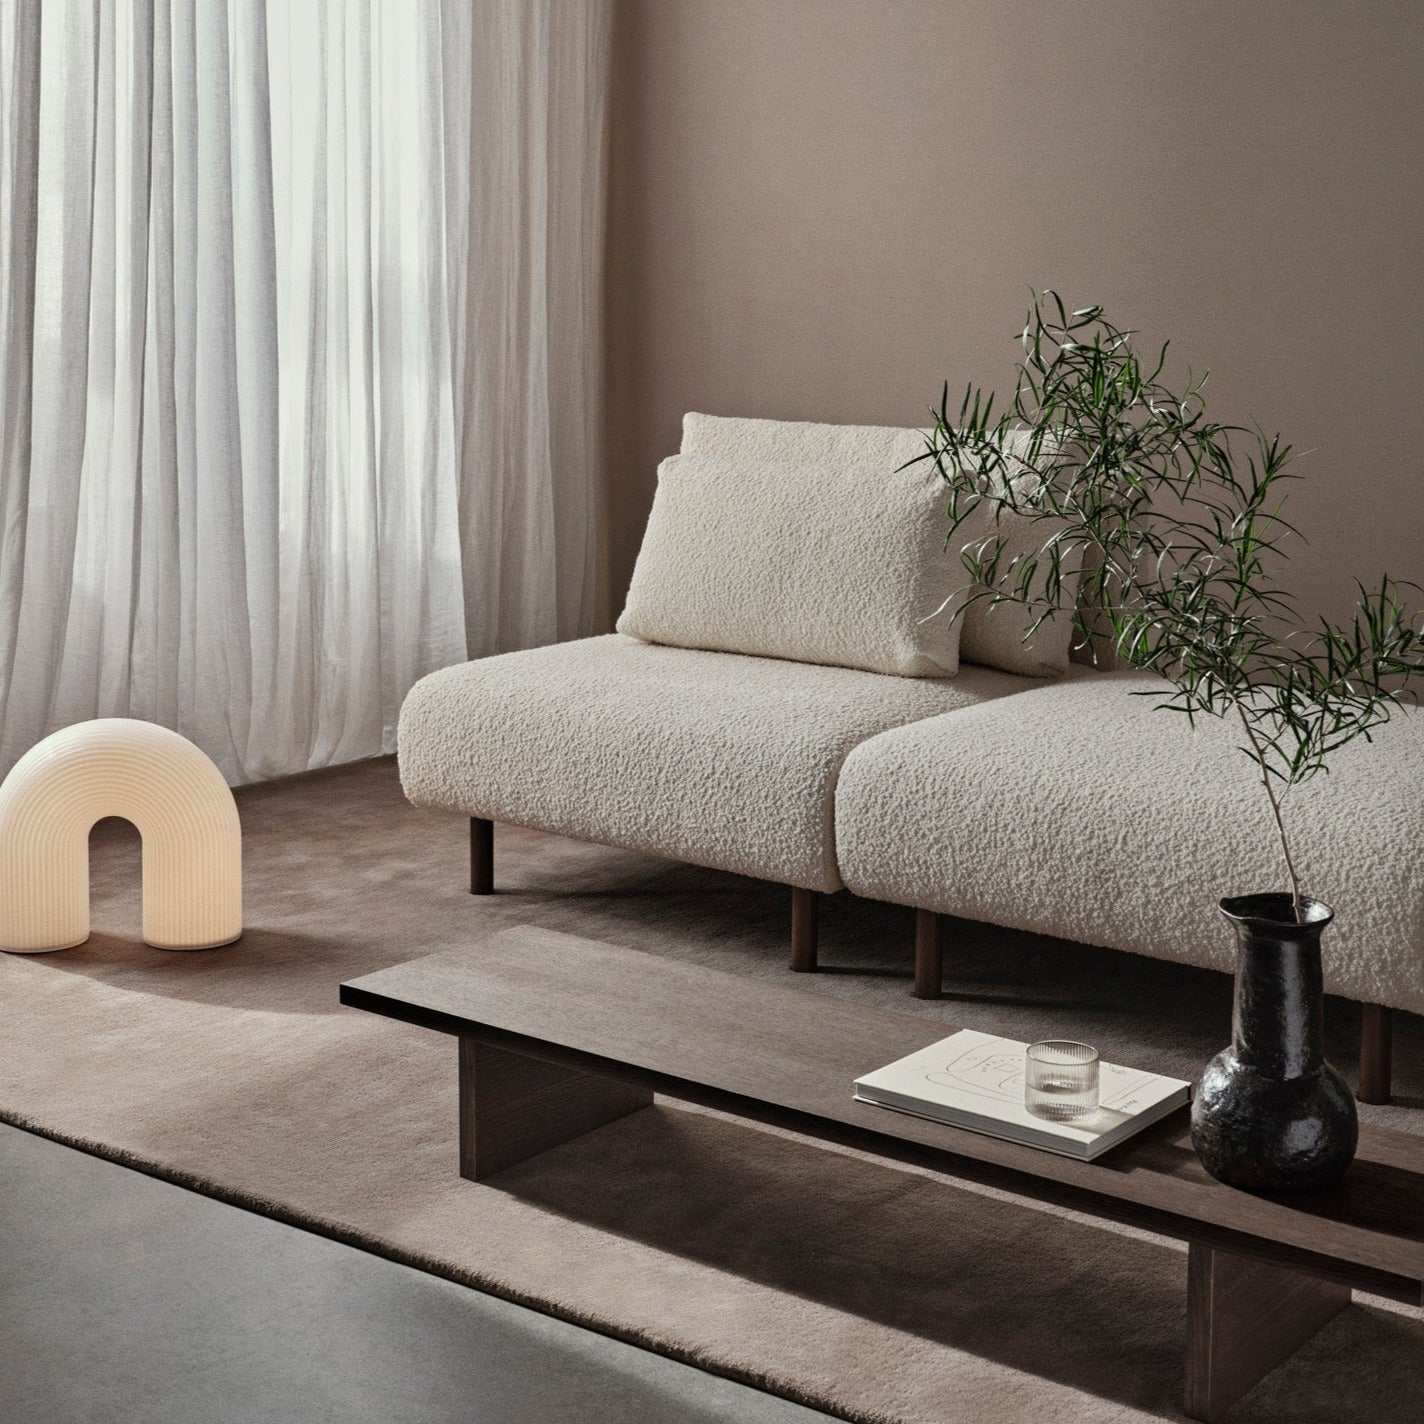 Kona Display Table fra Ferm Living kan også brukes som et smalt, avlangt sofabord.